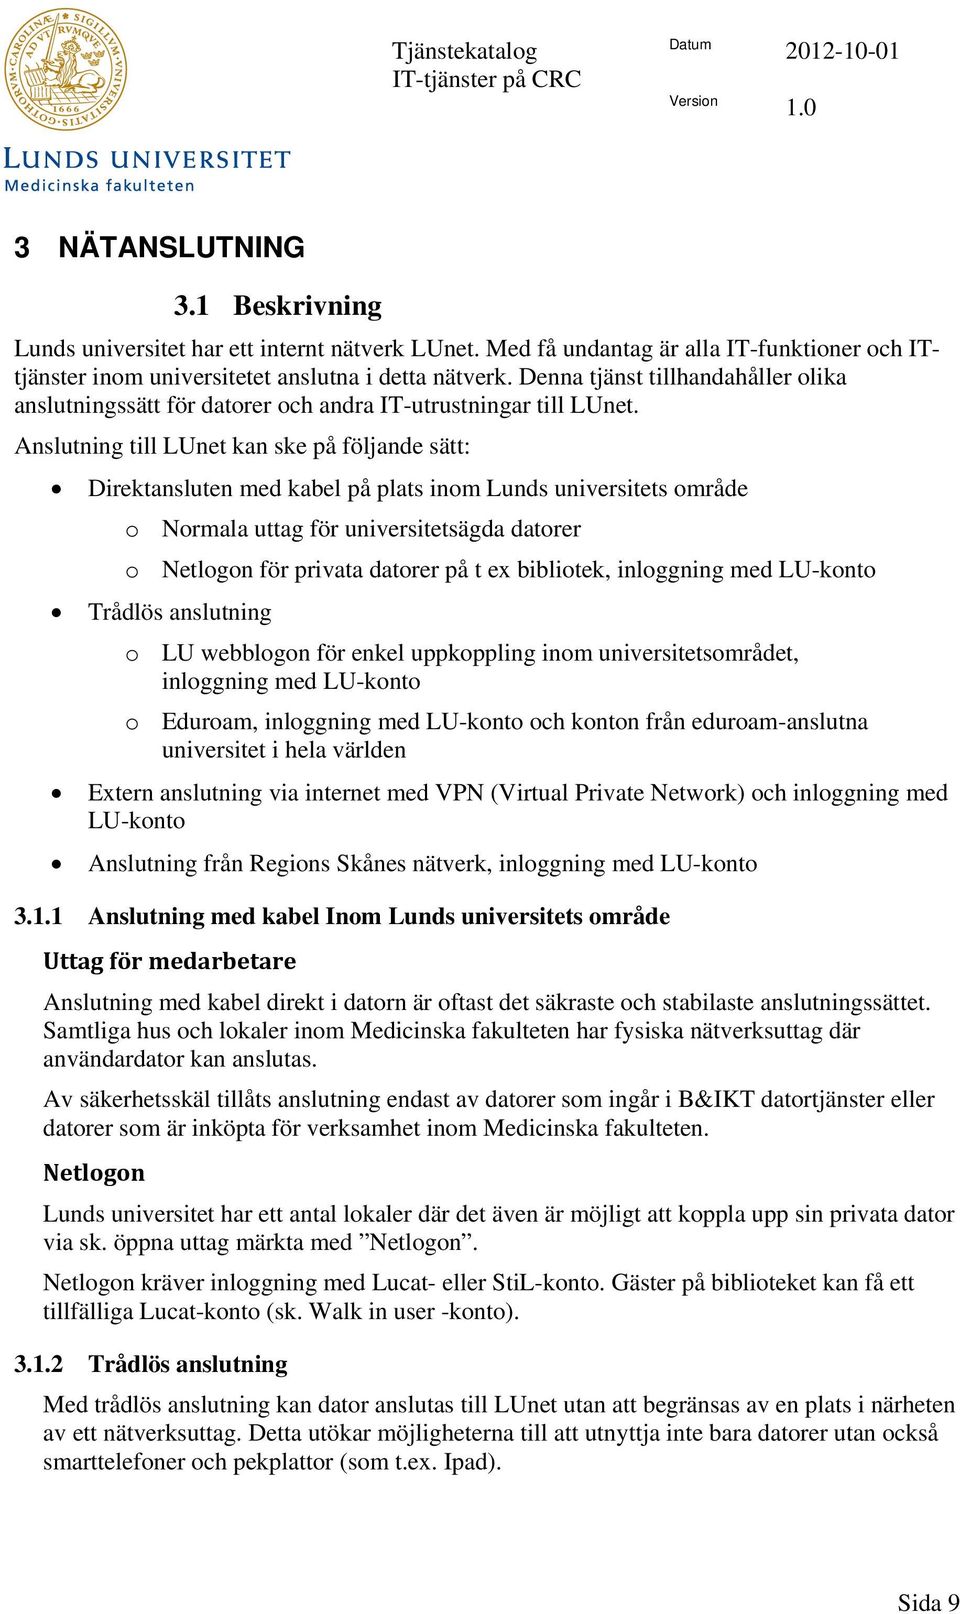 Anslutning till LUnet kan ske på följande sätt: Direktansluten med kabel på plats inom Lunds universitets område o Normala uttag för universitetsägda datorer o Netlogon för privata datorer på t ex